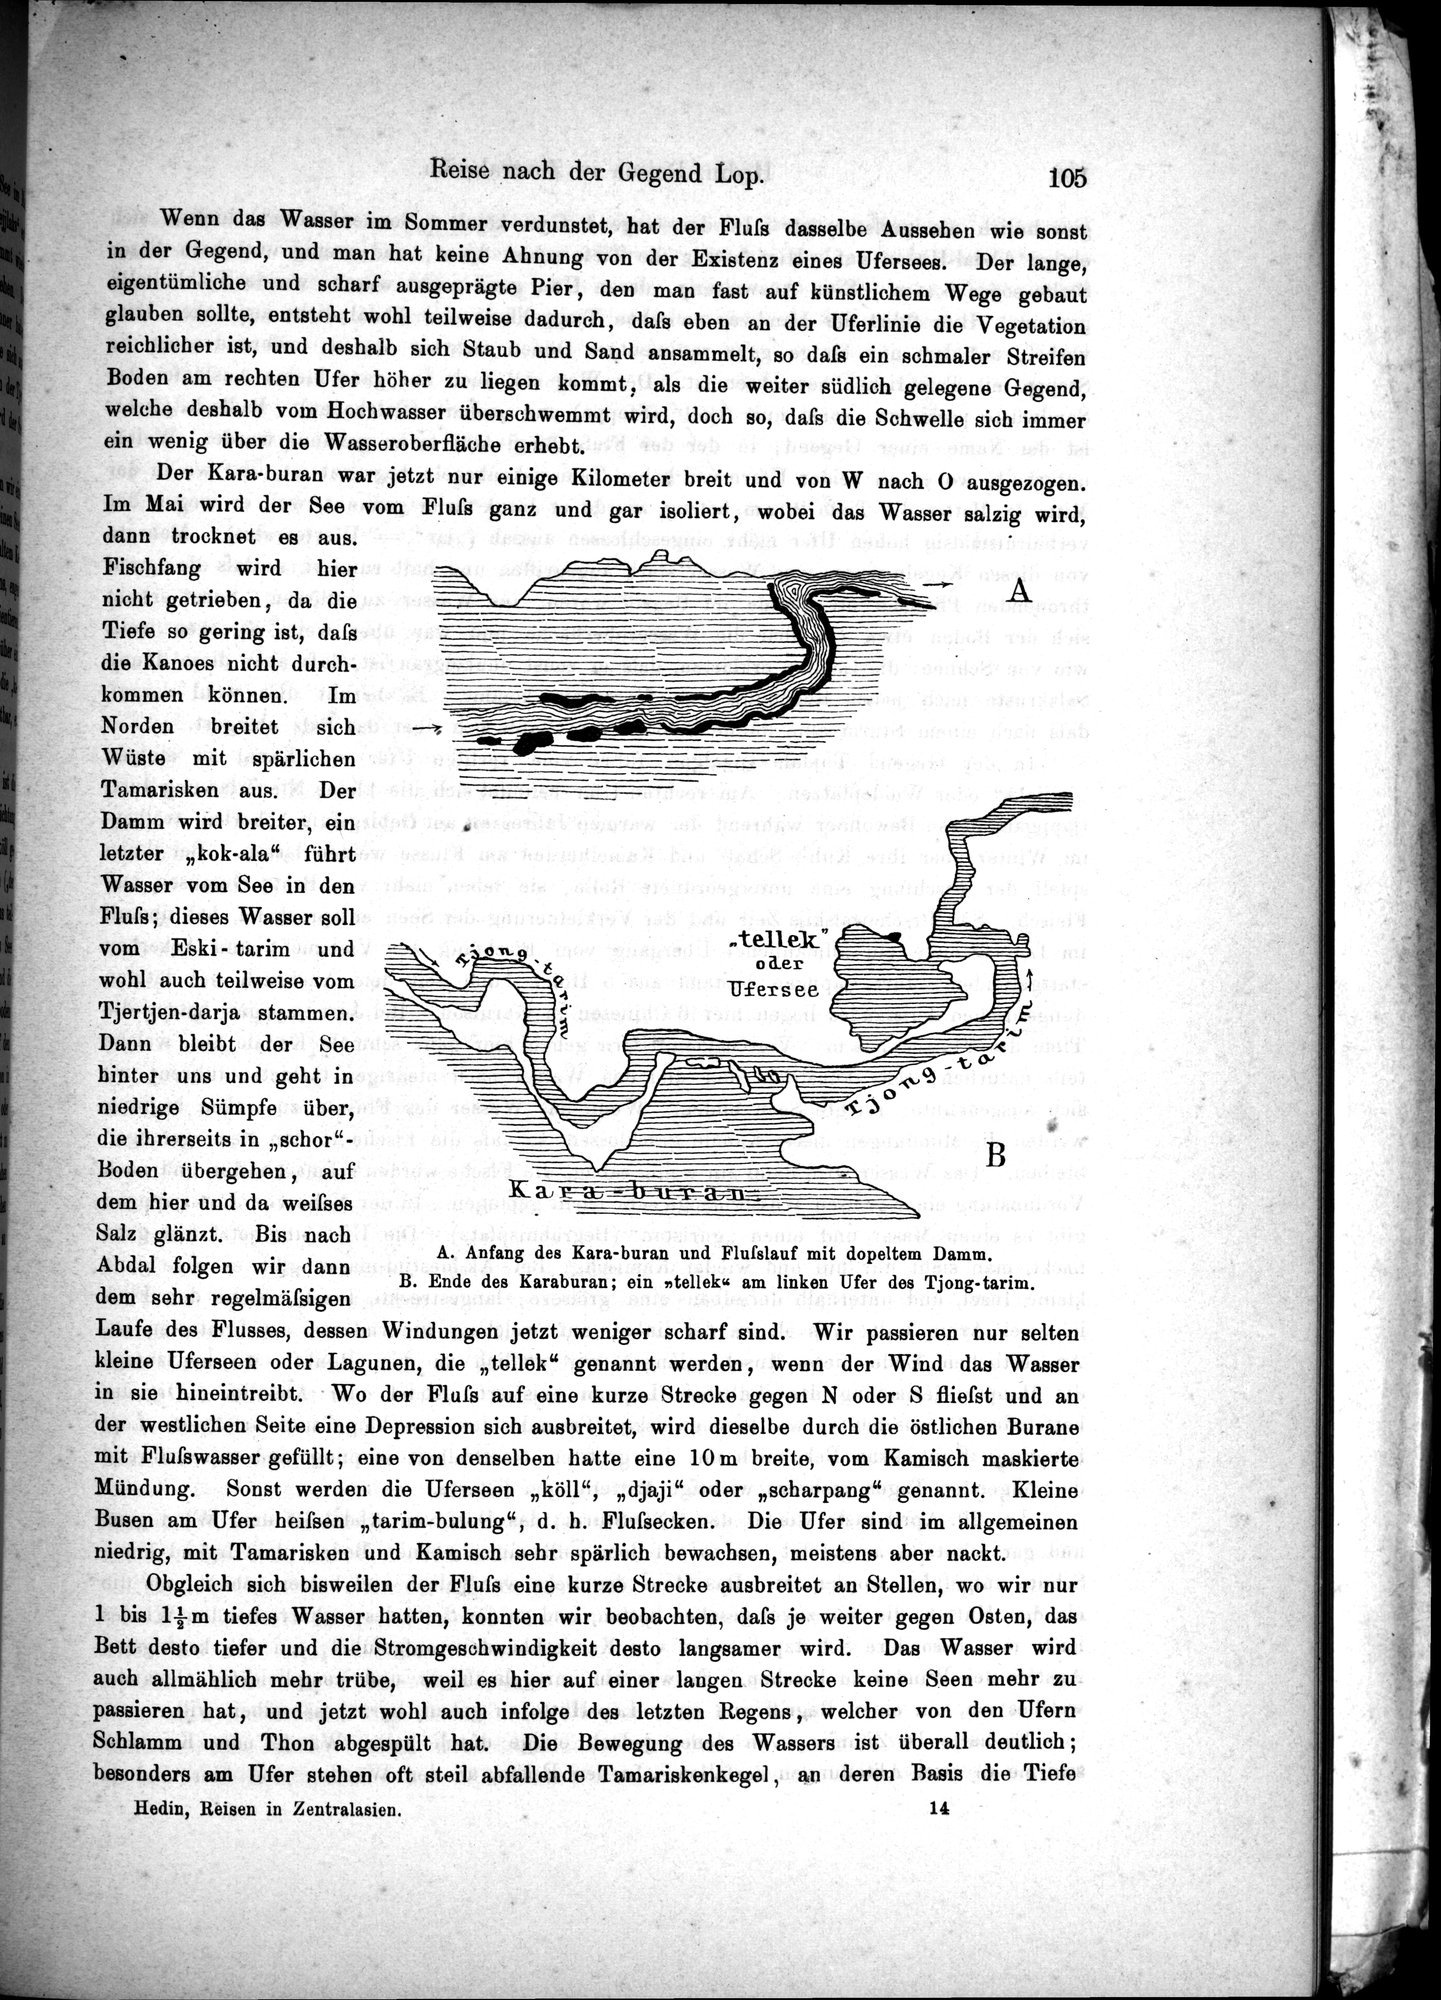 Die Geographische-Wissenschaftlichen Ergebnisse meiner Reisen in Zentralasien, 1894-1897 : vol.1 / Page 117 (Grayscale High Resolution Image)